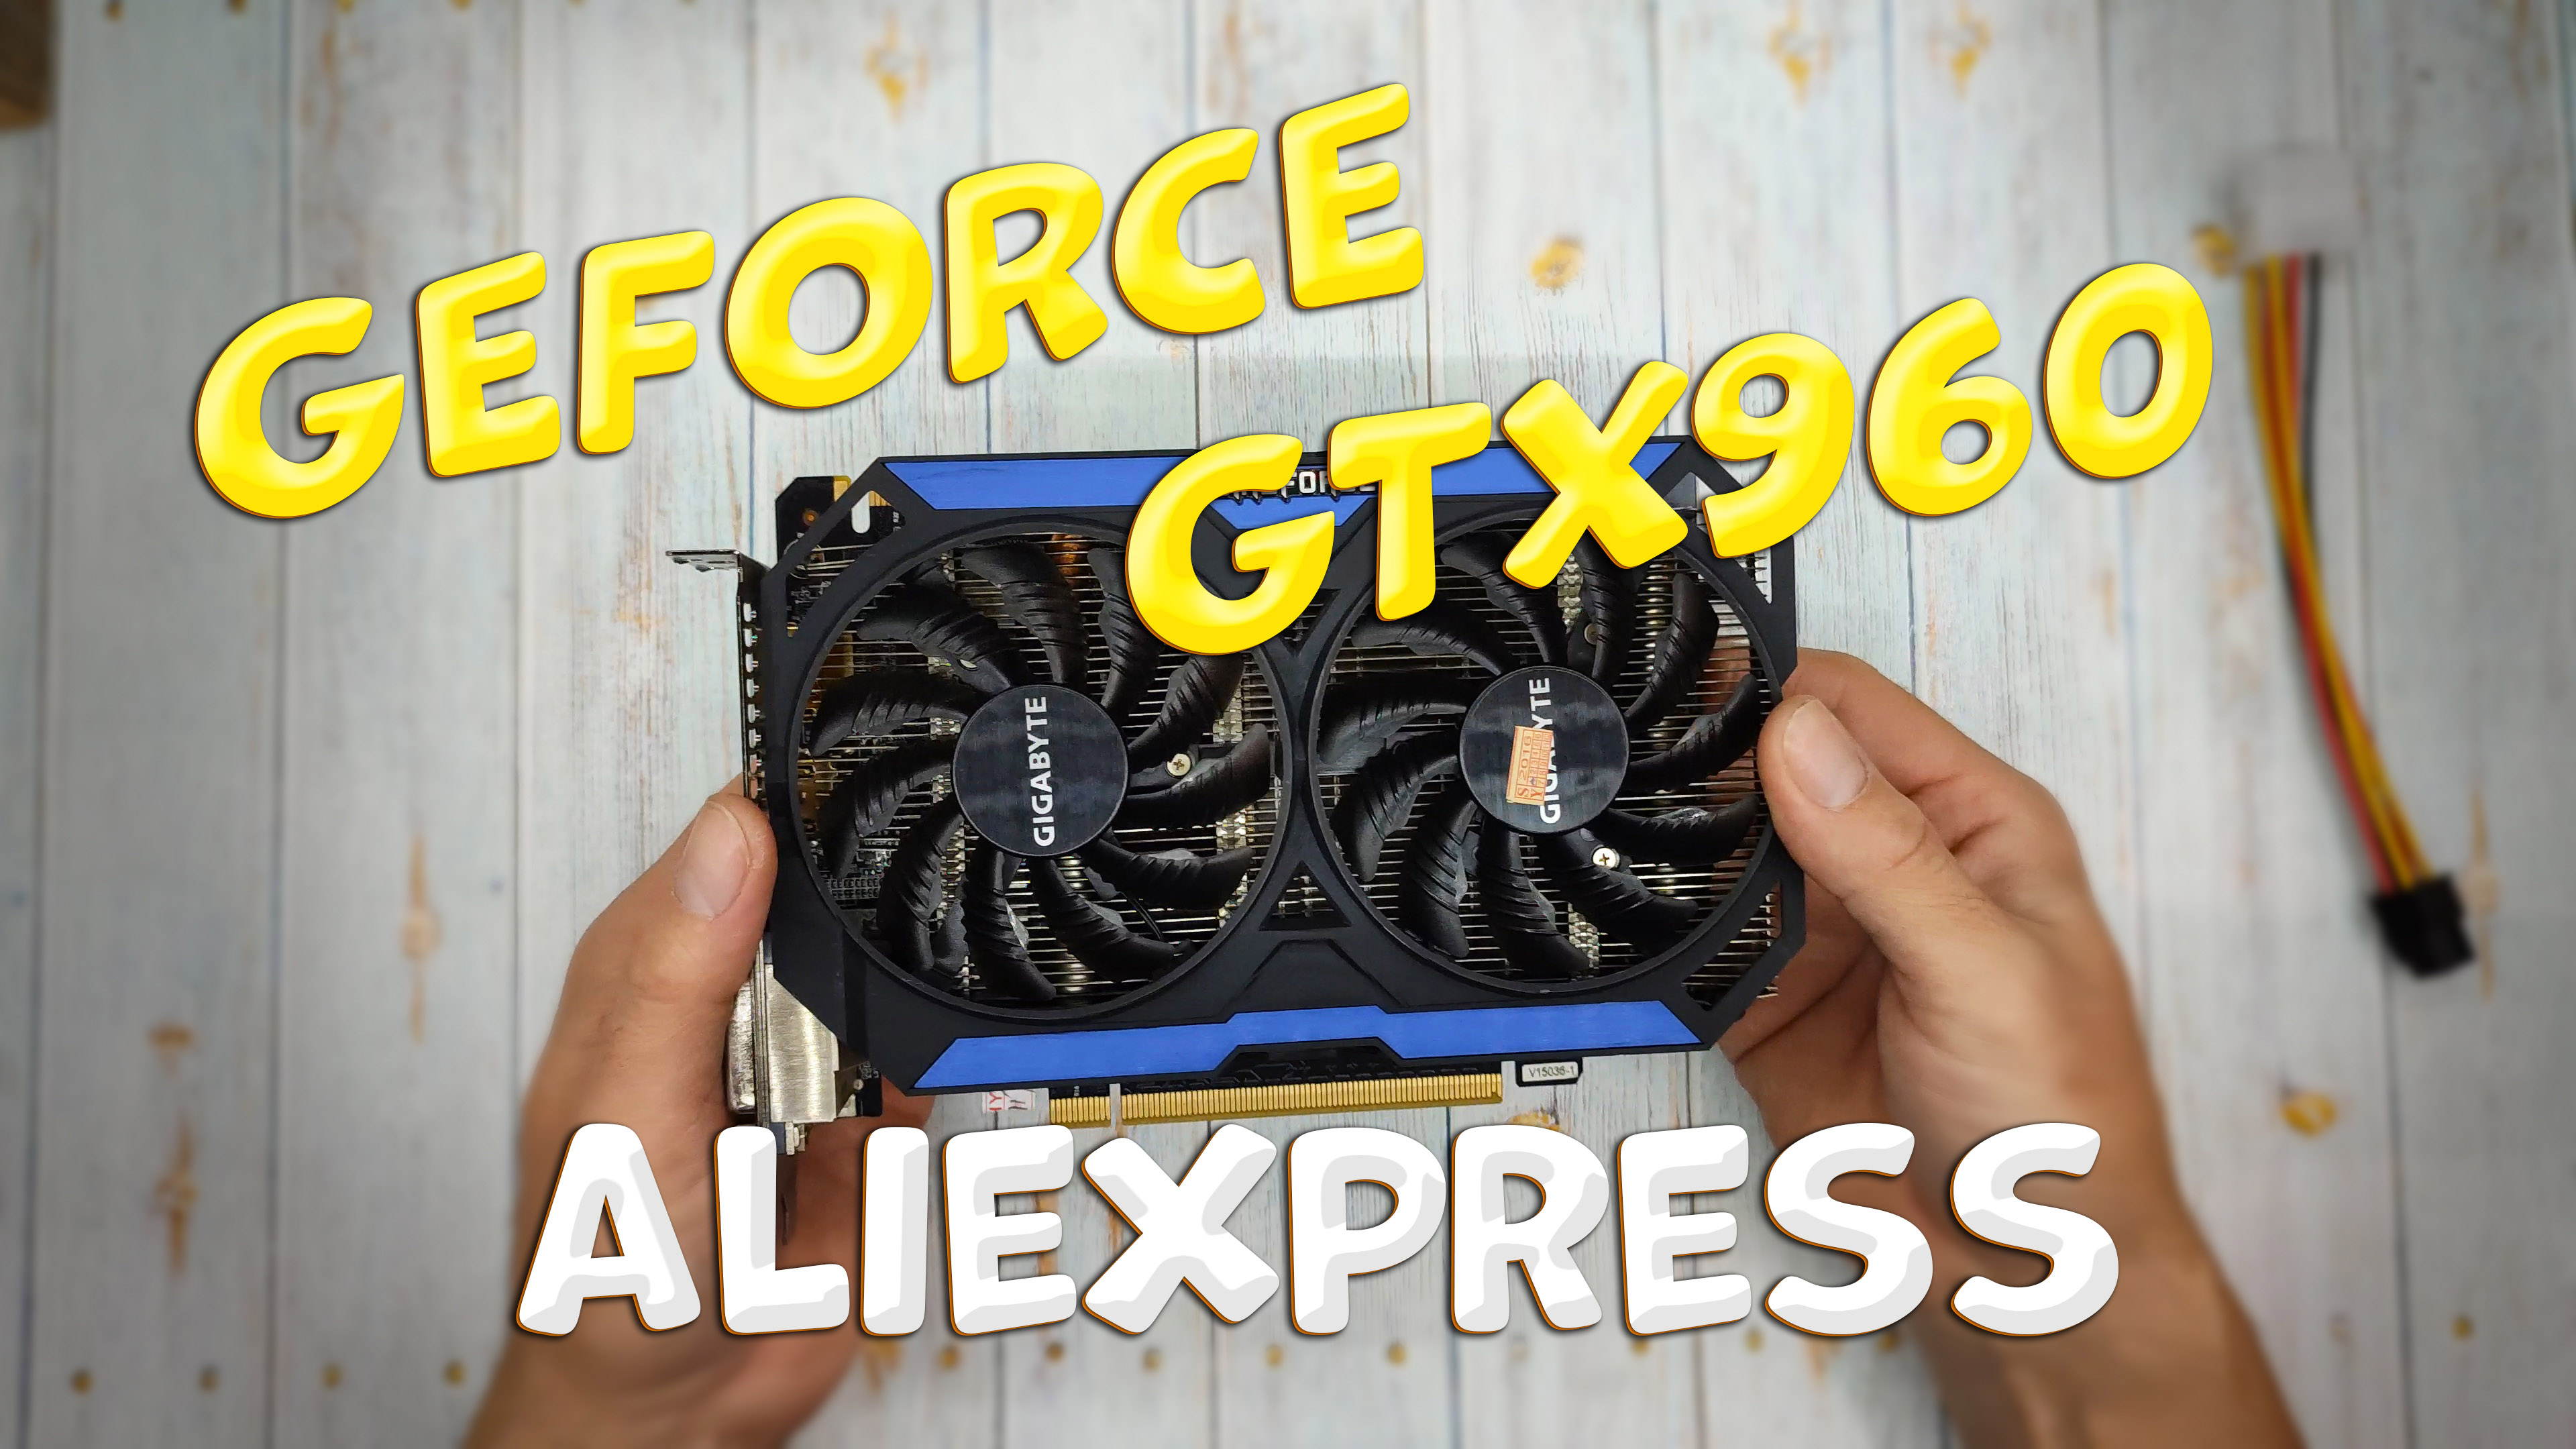 GEFORCE GTX960 с ALIEXPRESS